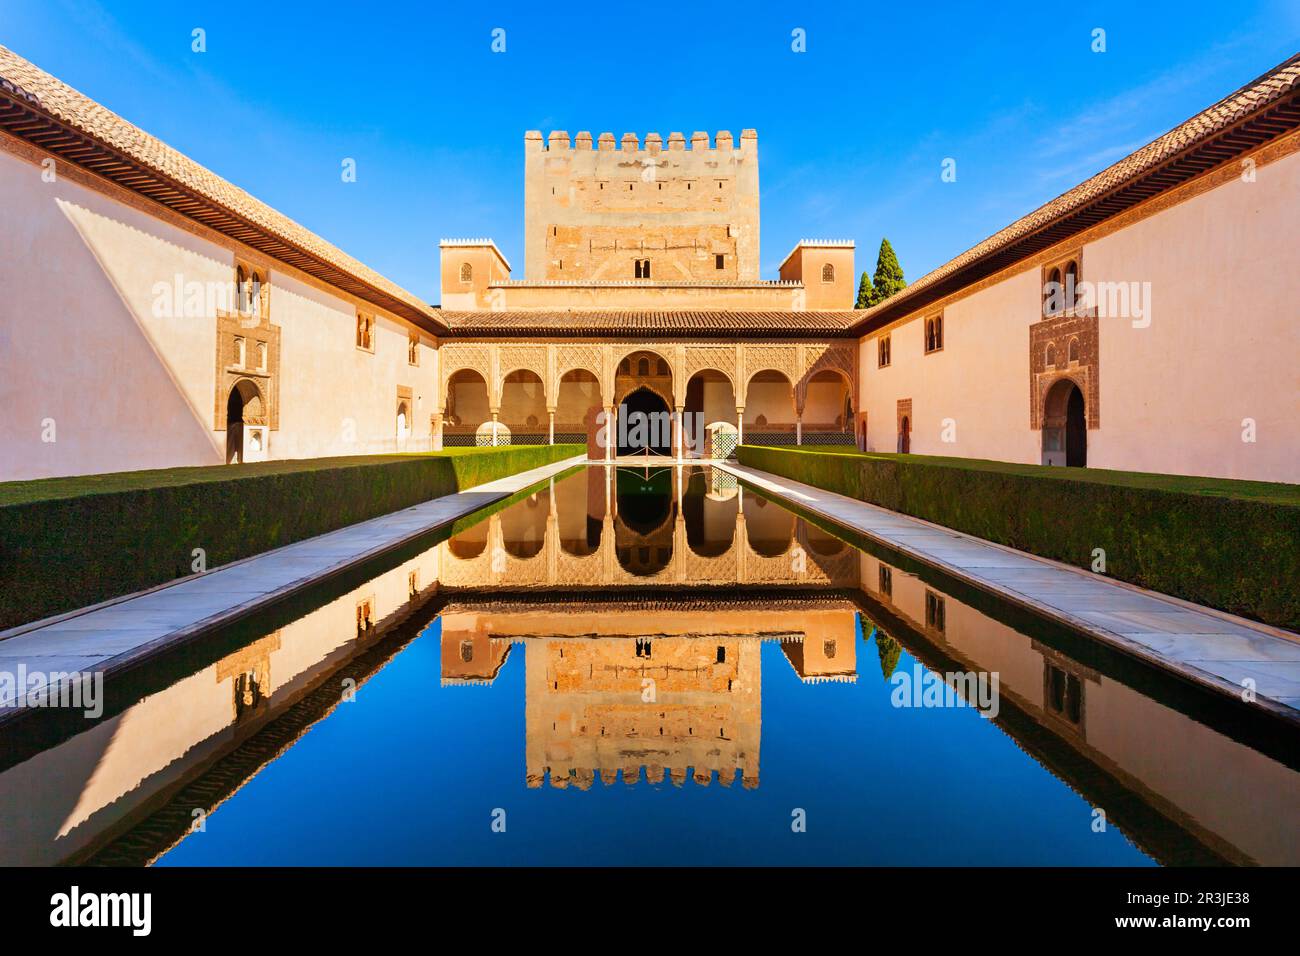 La Cour des Myrtles est la partie centrale du Palais Comares à l'intérieur du complexe du palais de l'Alhambra à Grenade, en Espagne Banque D'Images